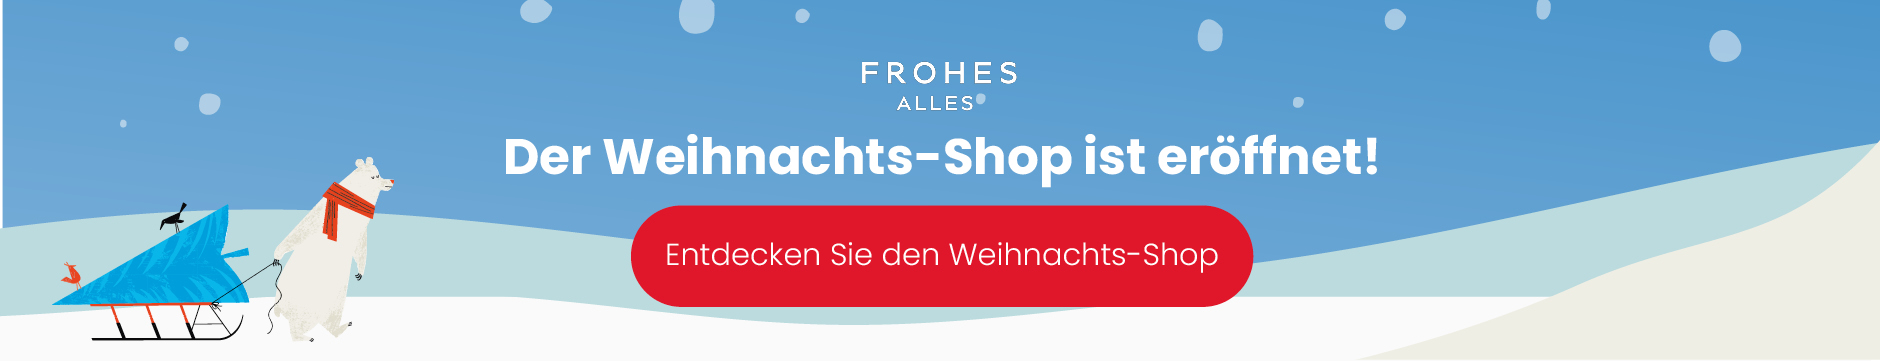 Weihnachtsshop ist geöffnet HP Banner-Deutsch